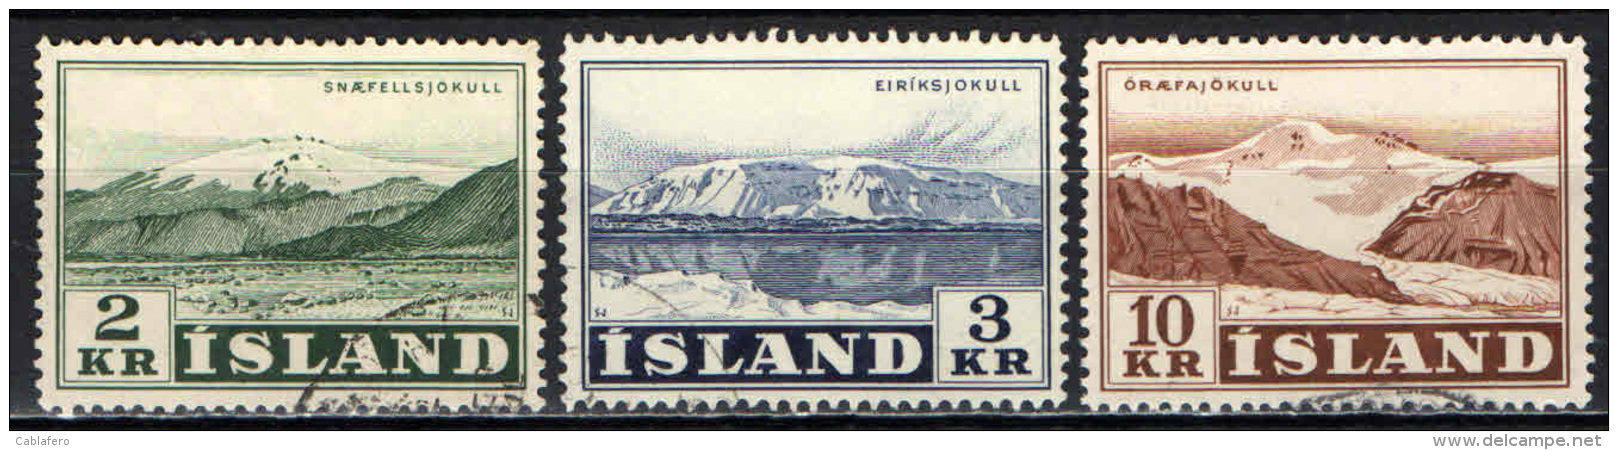 ISLANDA - 1957 - VEDUTE DI MONTAGNE: EIRIK E ORAEFA - USATI - Usati